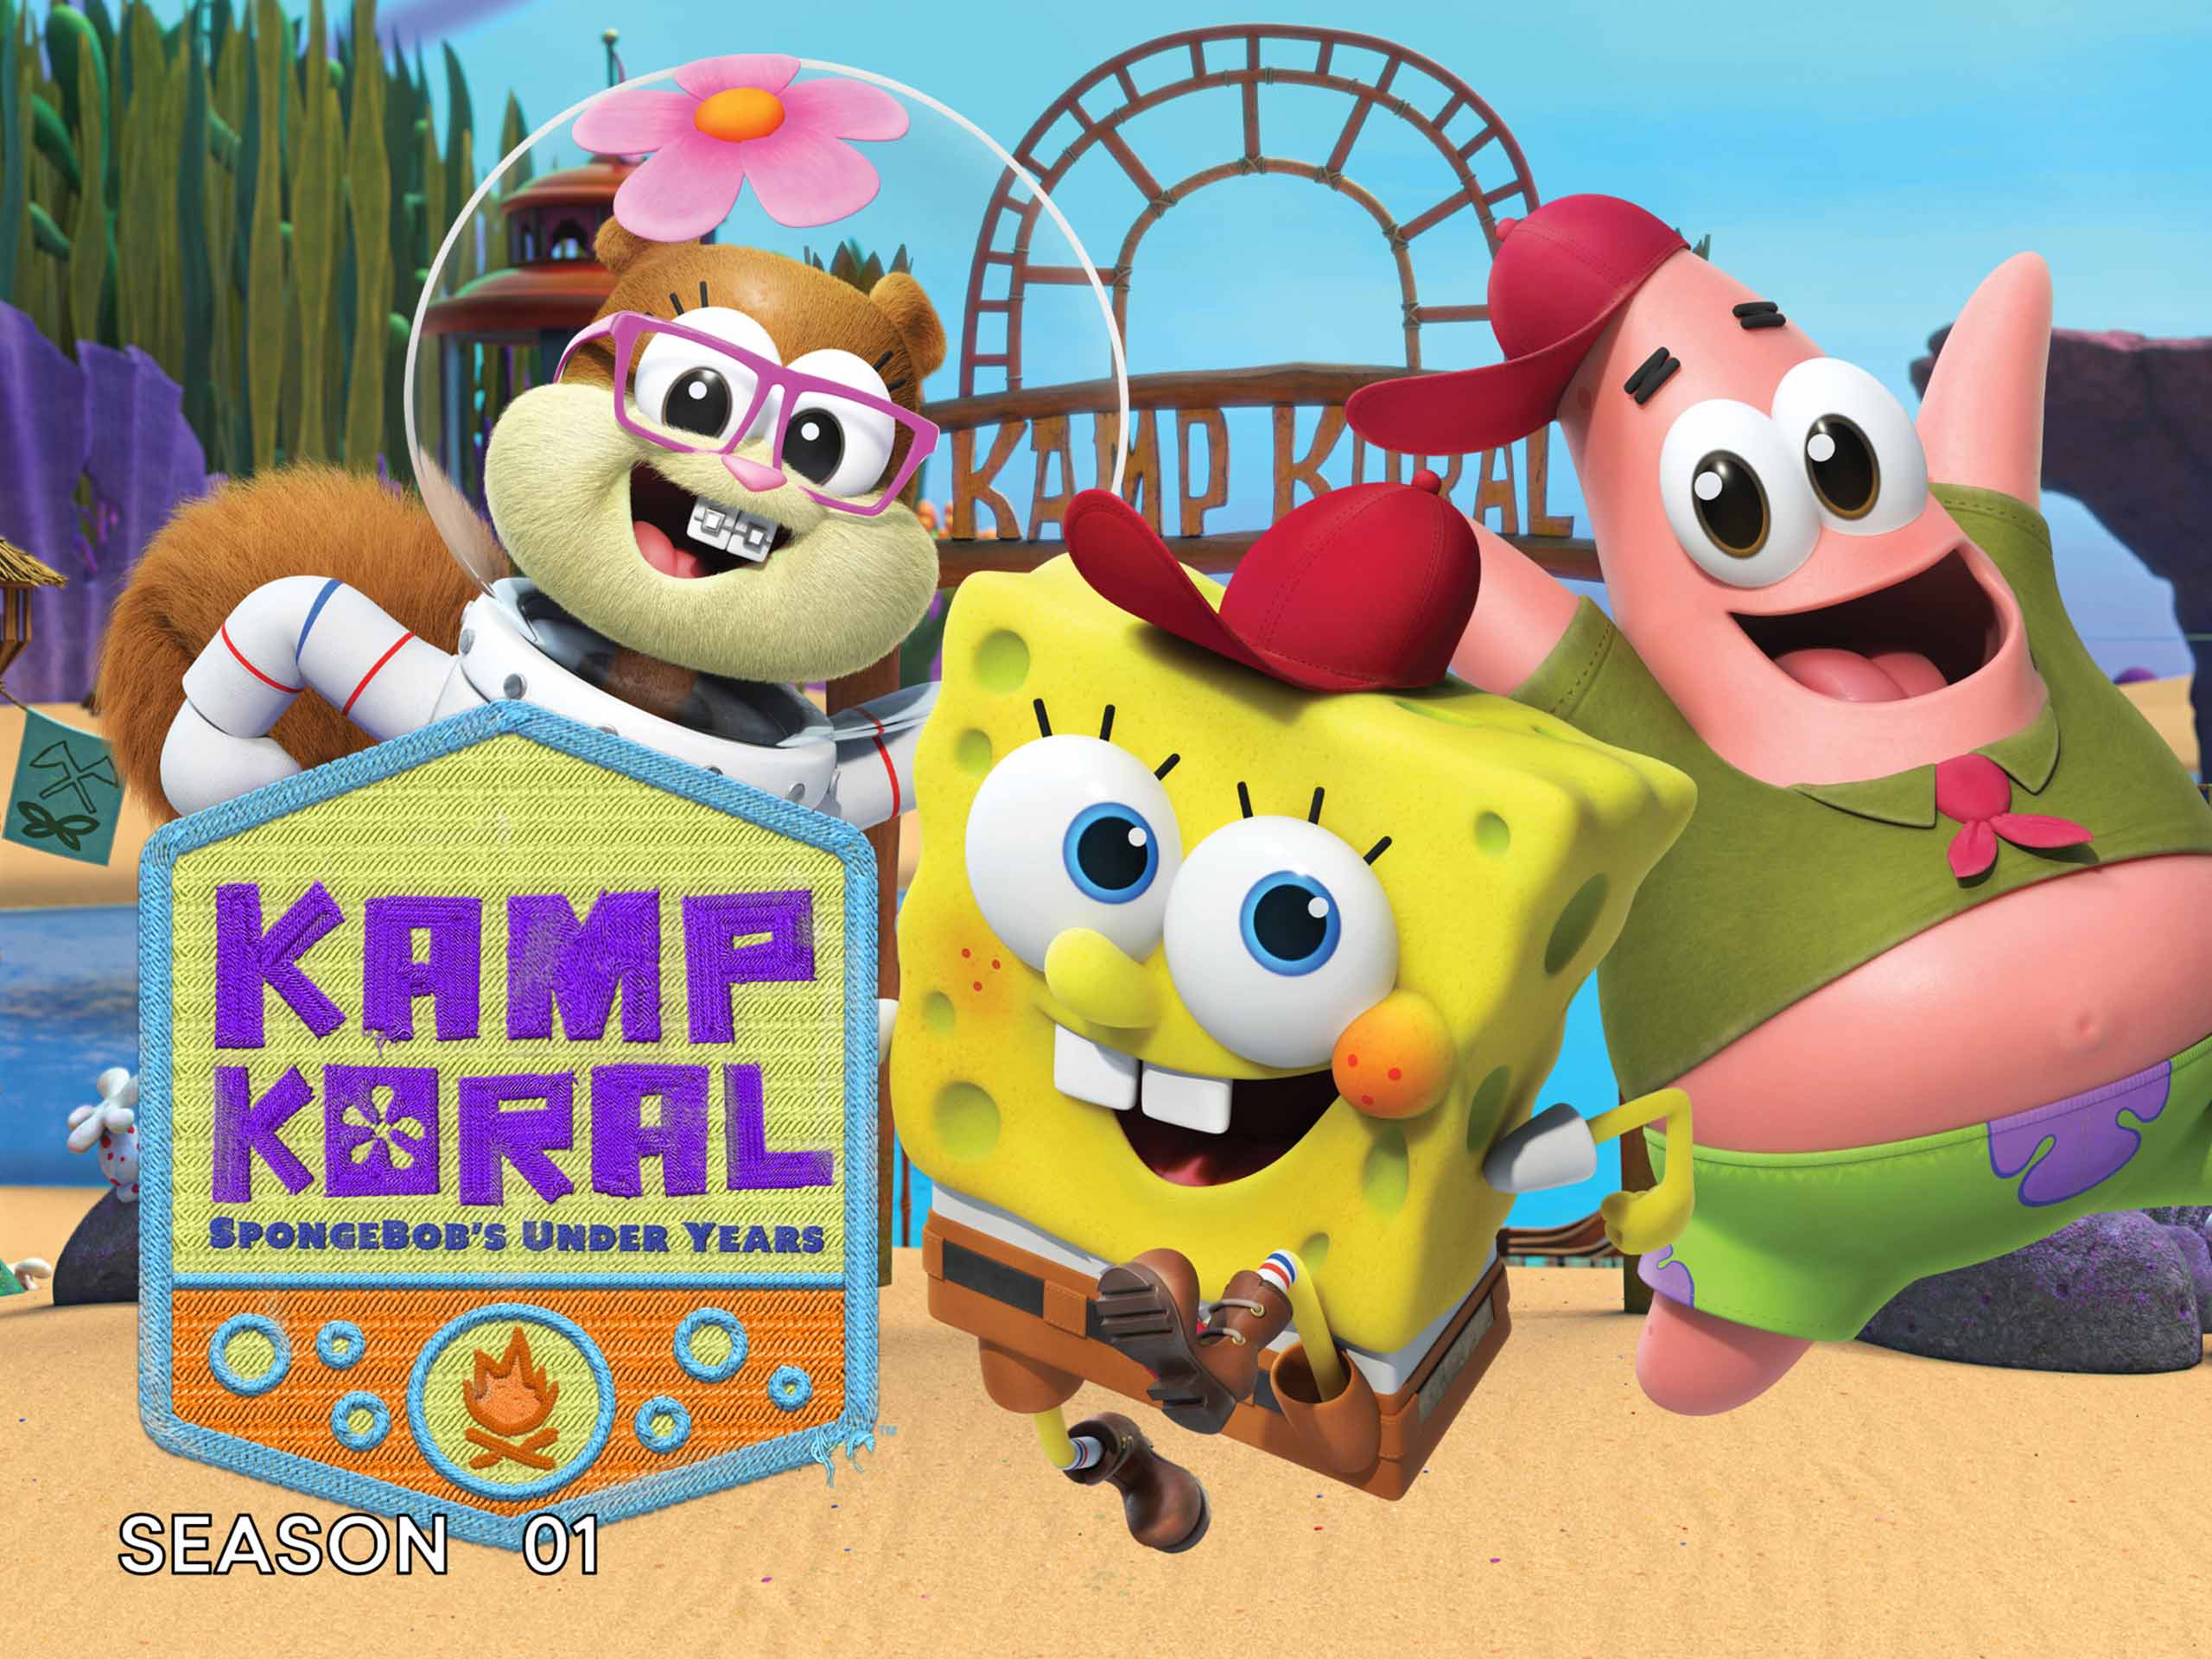 Kamp Koral SpongeBob’s Under Years